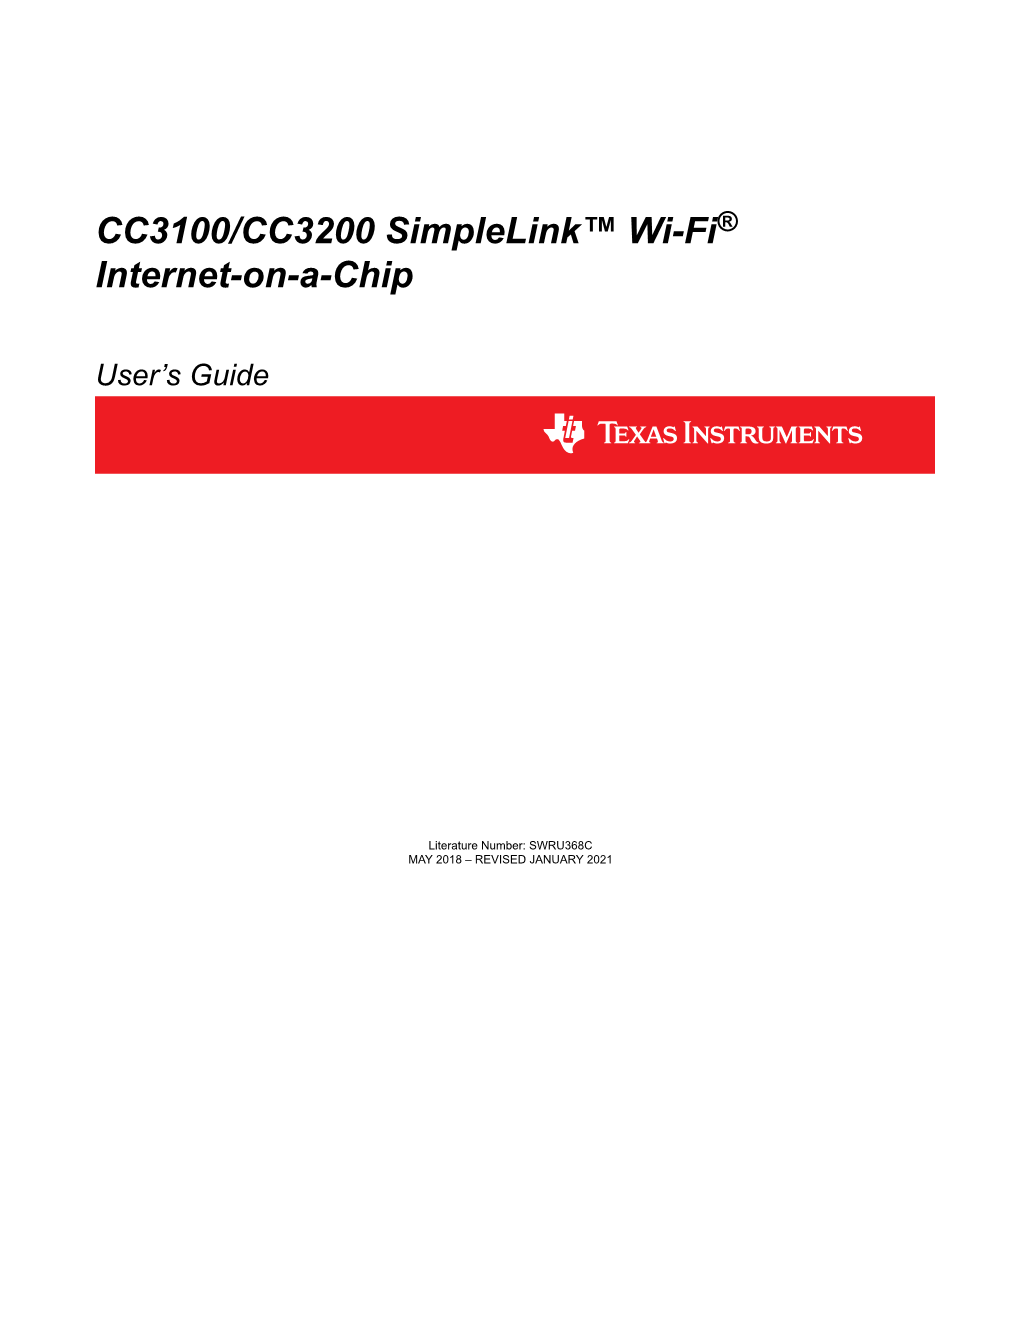 CC3100/CC3200 Simplelink Wi-Fi Internet-On-A